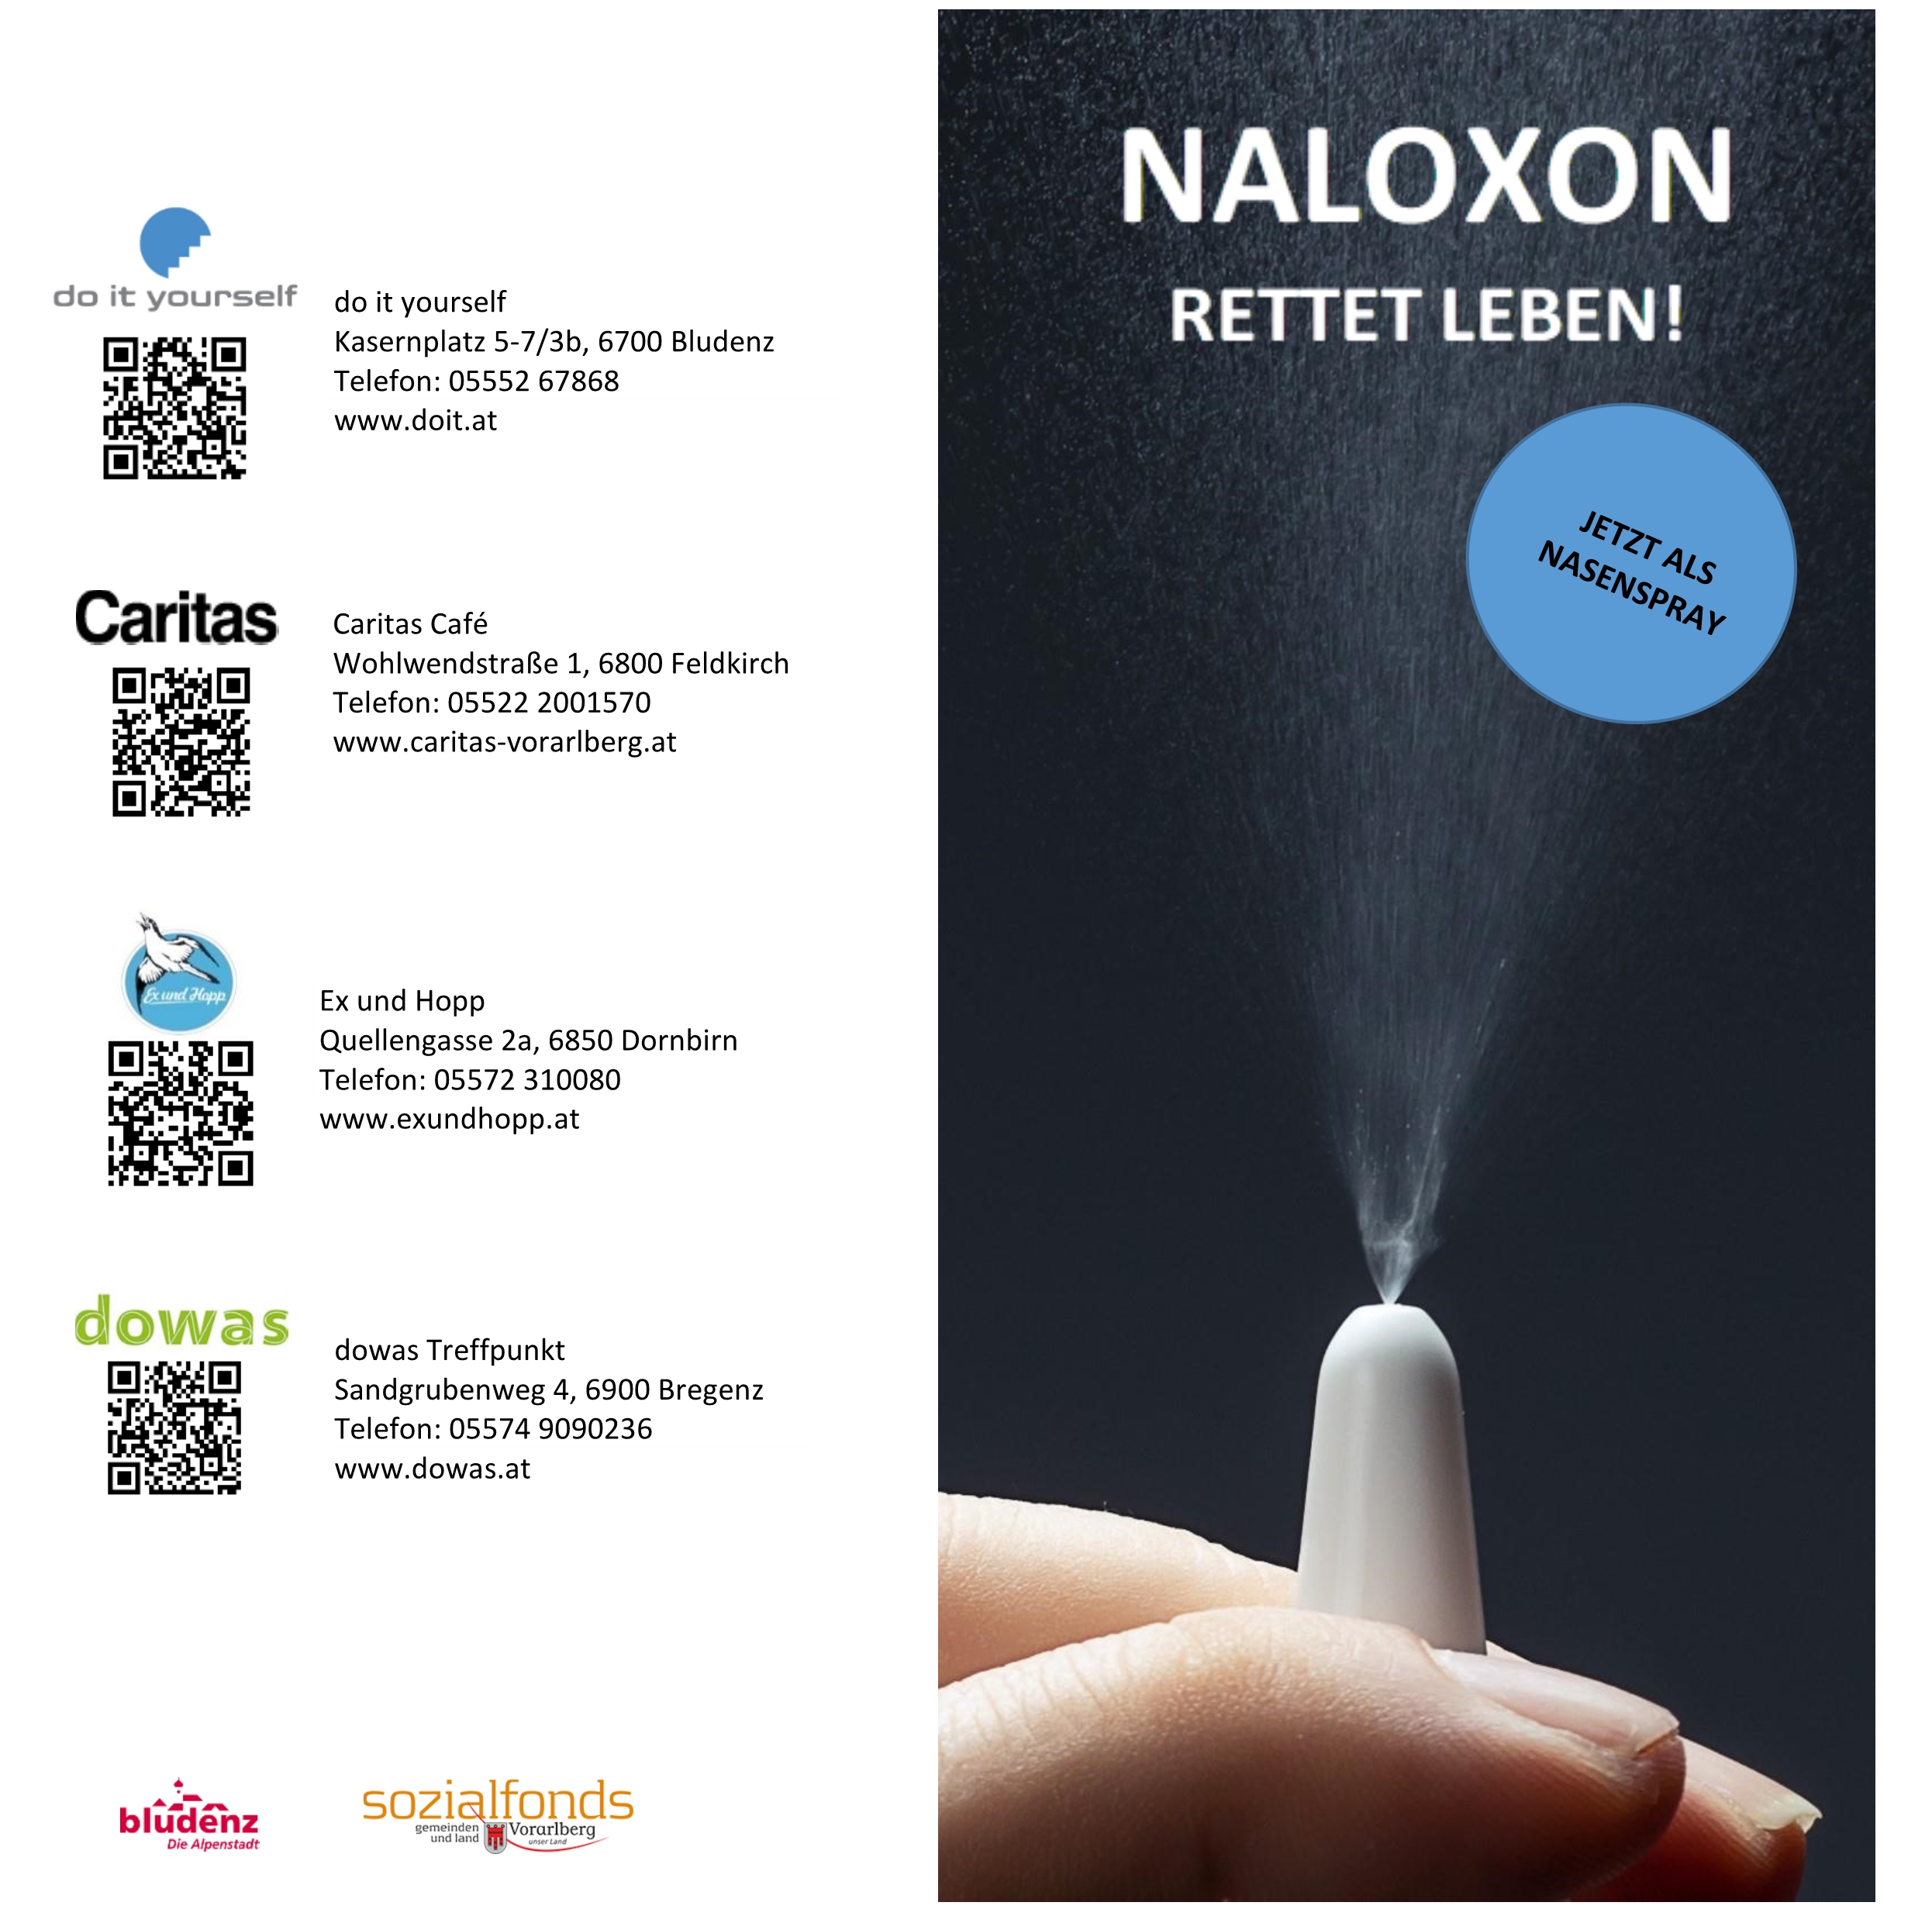 Naloxon – rettet leben!